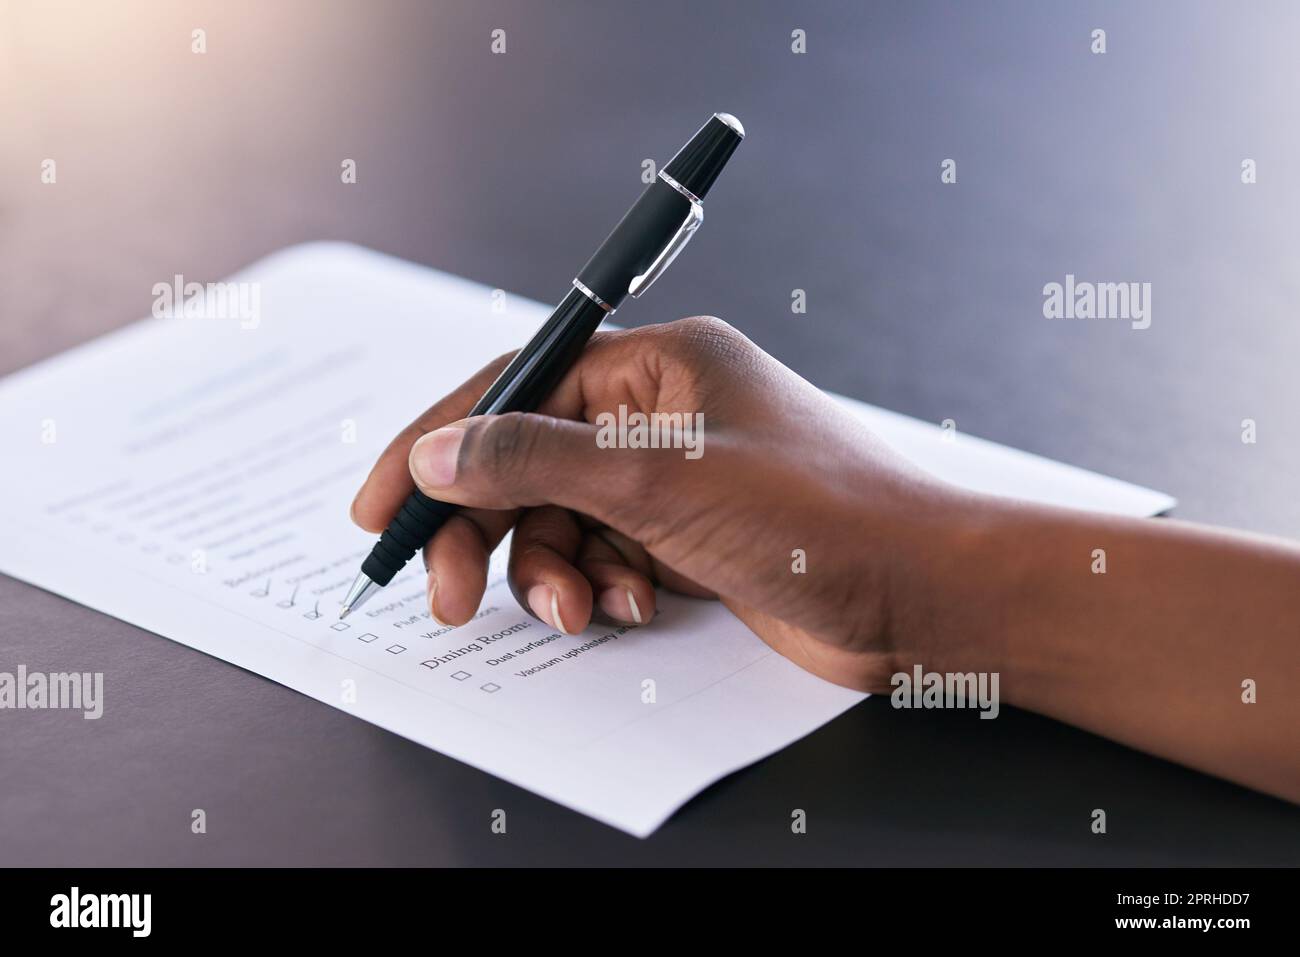 Eine Frau markiert abgeschlossene Aufgaben auf einer Liste von Aufgaben. Stockfoto